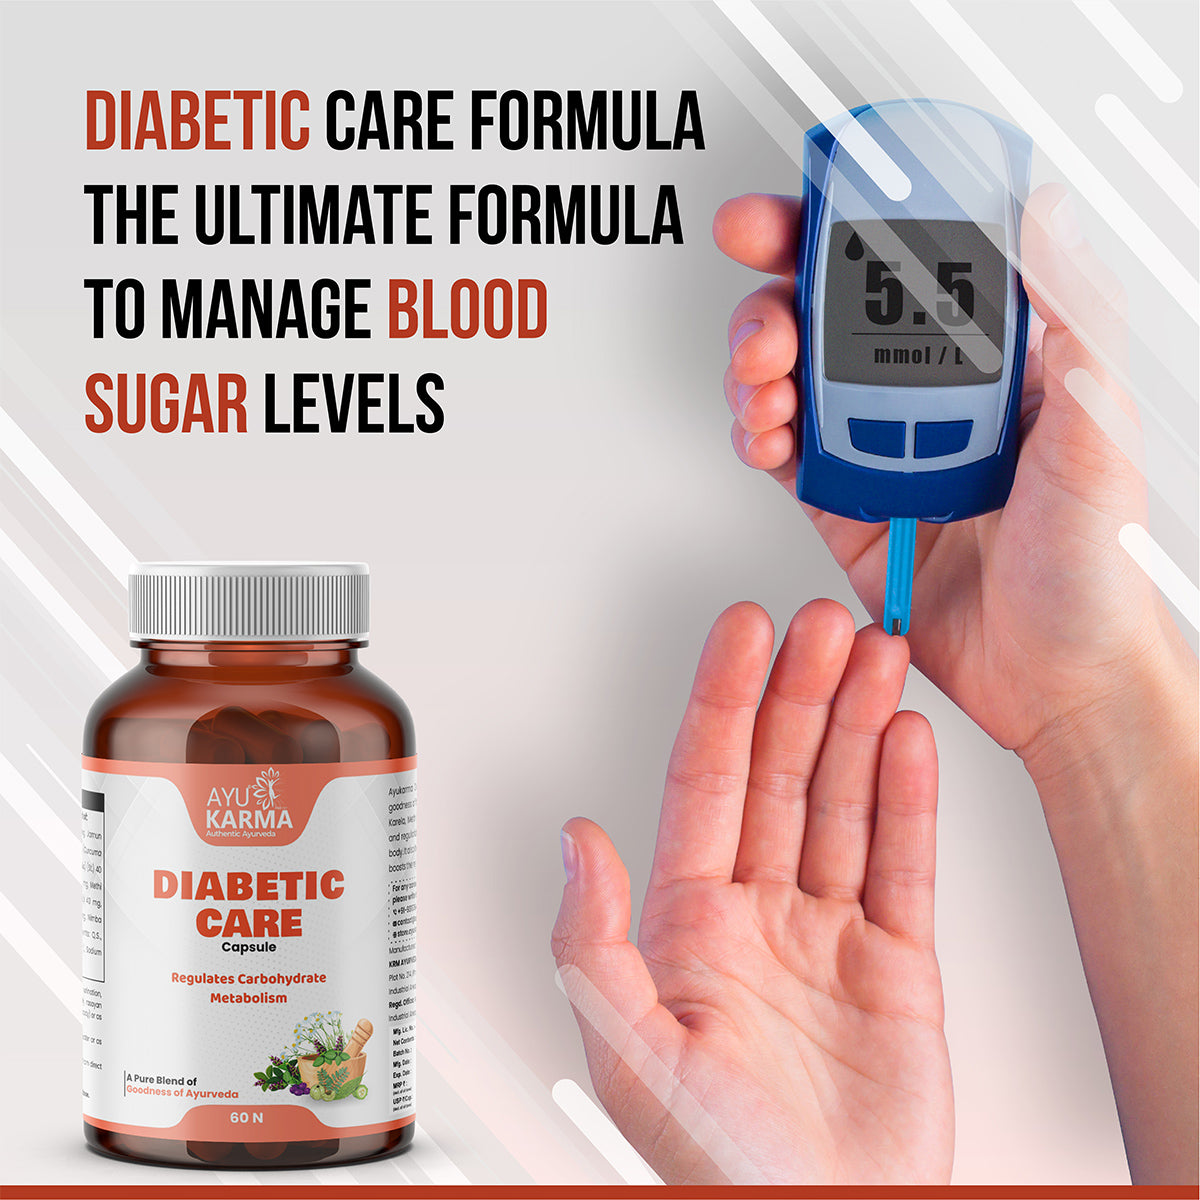 Diabetic Care Capsule